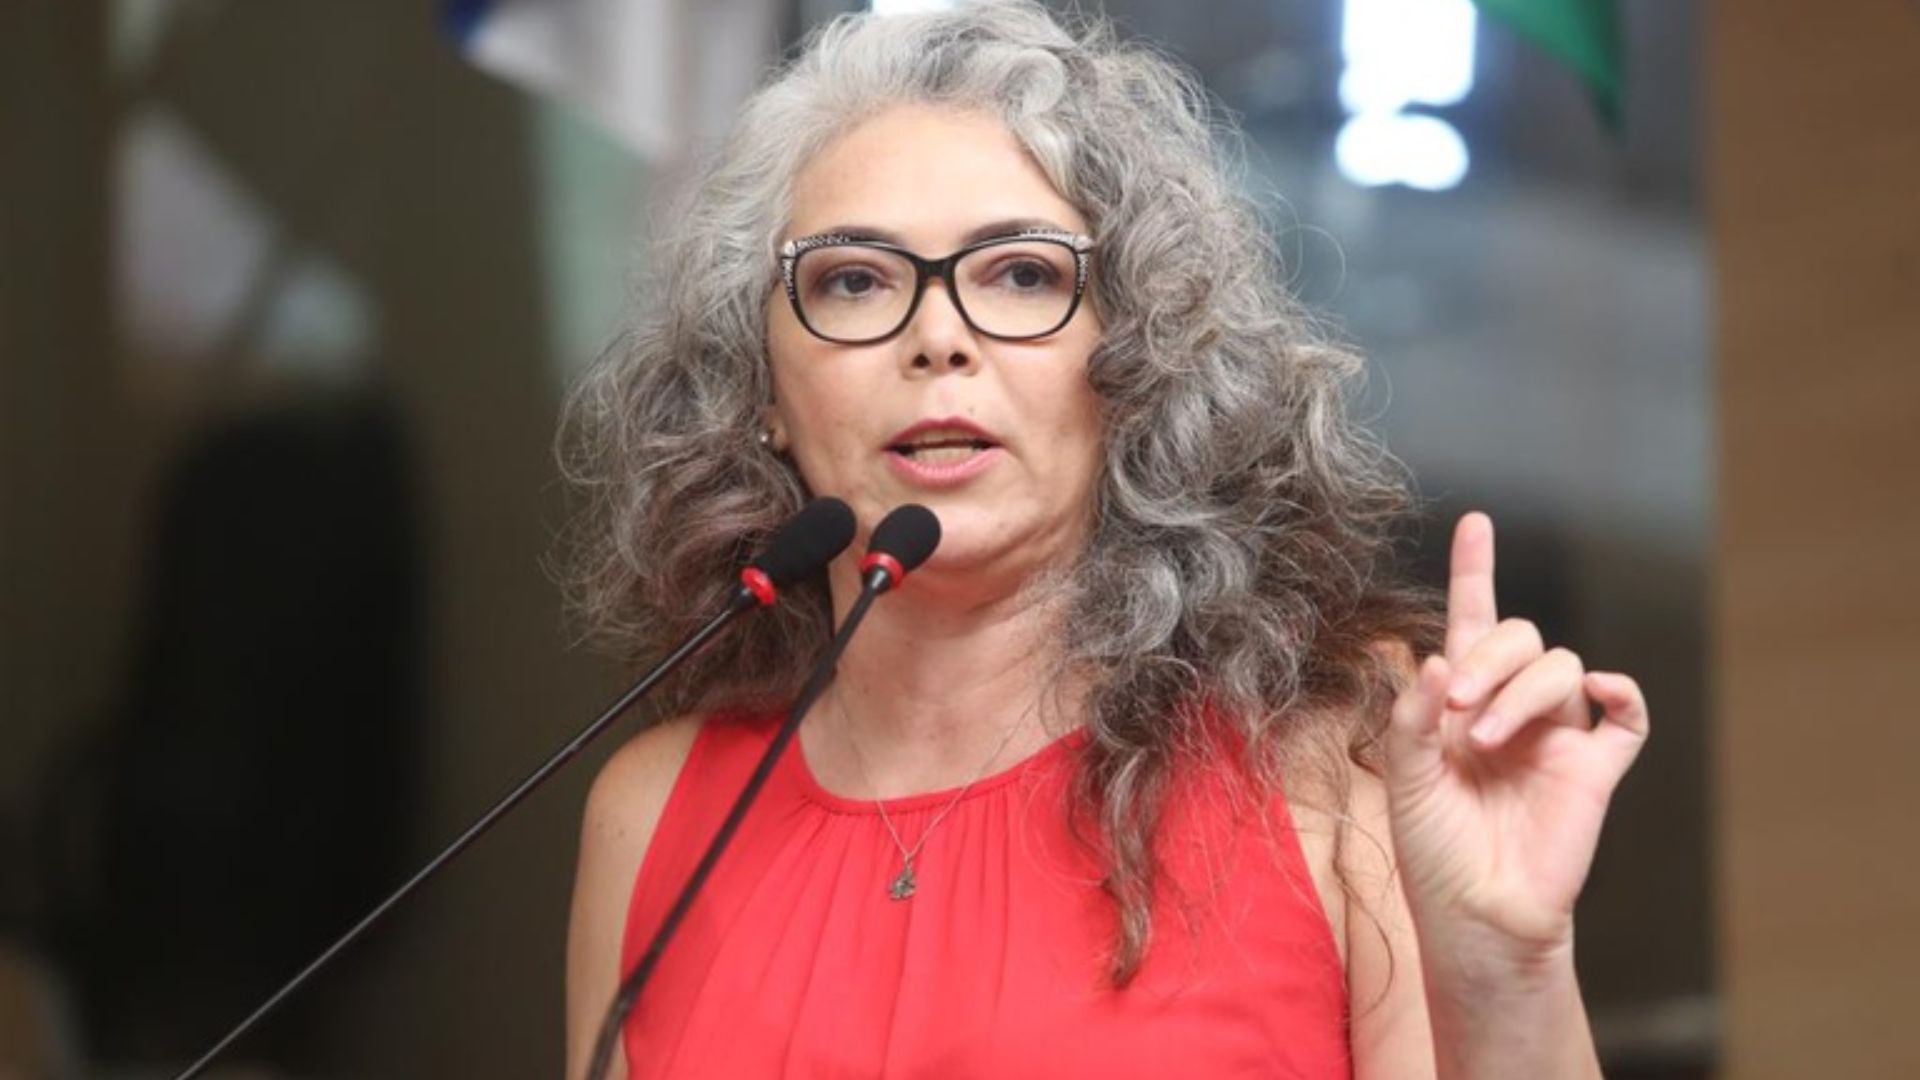 Vereadora do PT promove boicote a Nubank após banco divulgar evento da Brasil Paralelo. Foto: Câmara Municipal do Recife